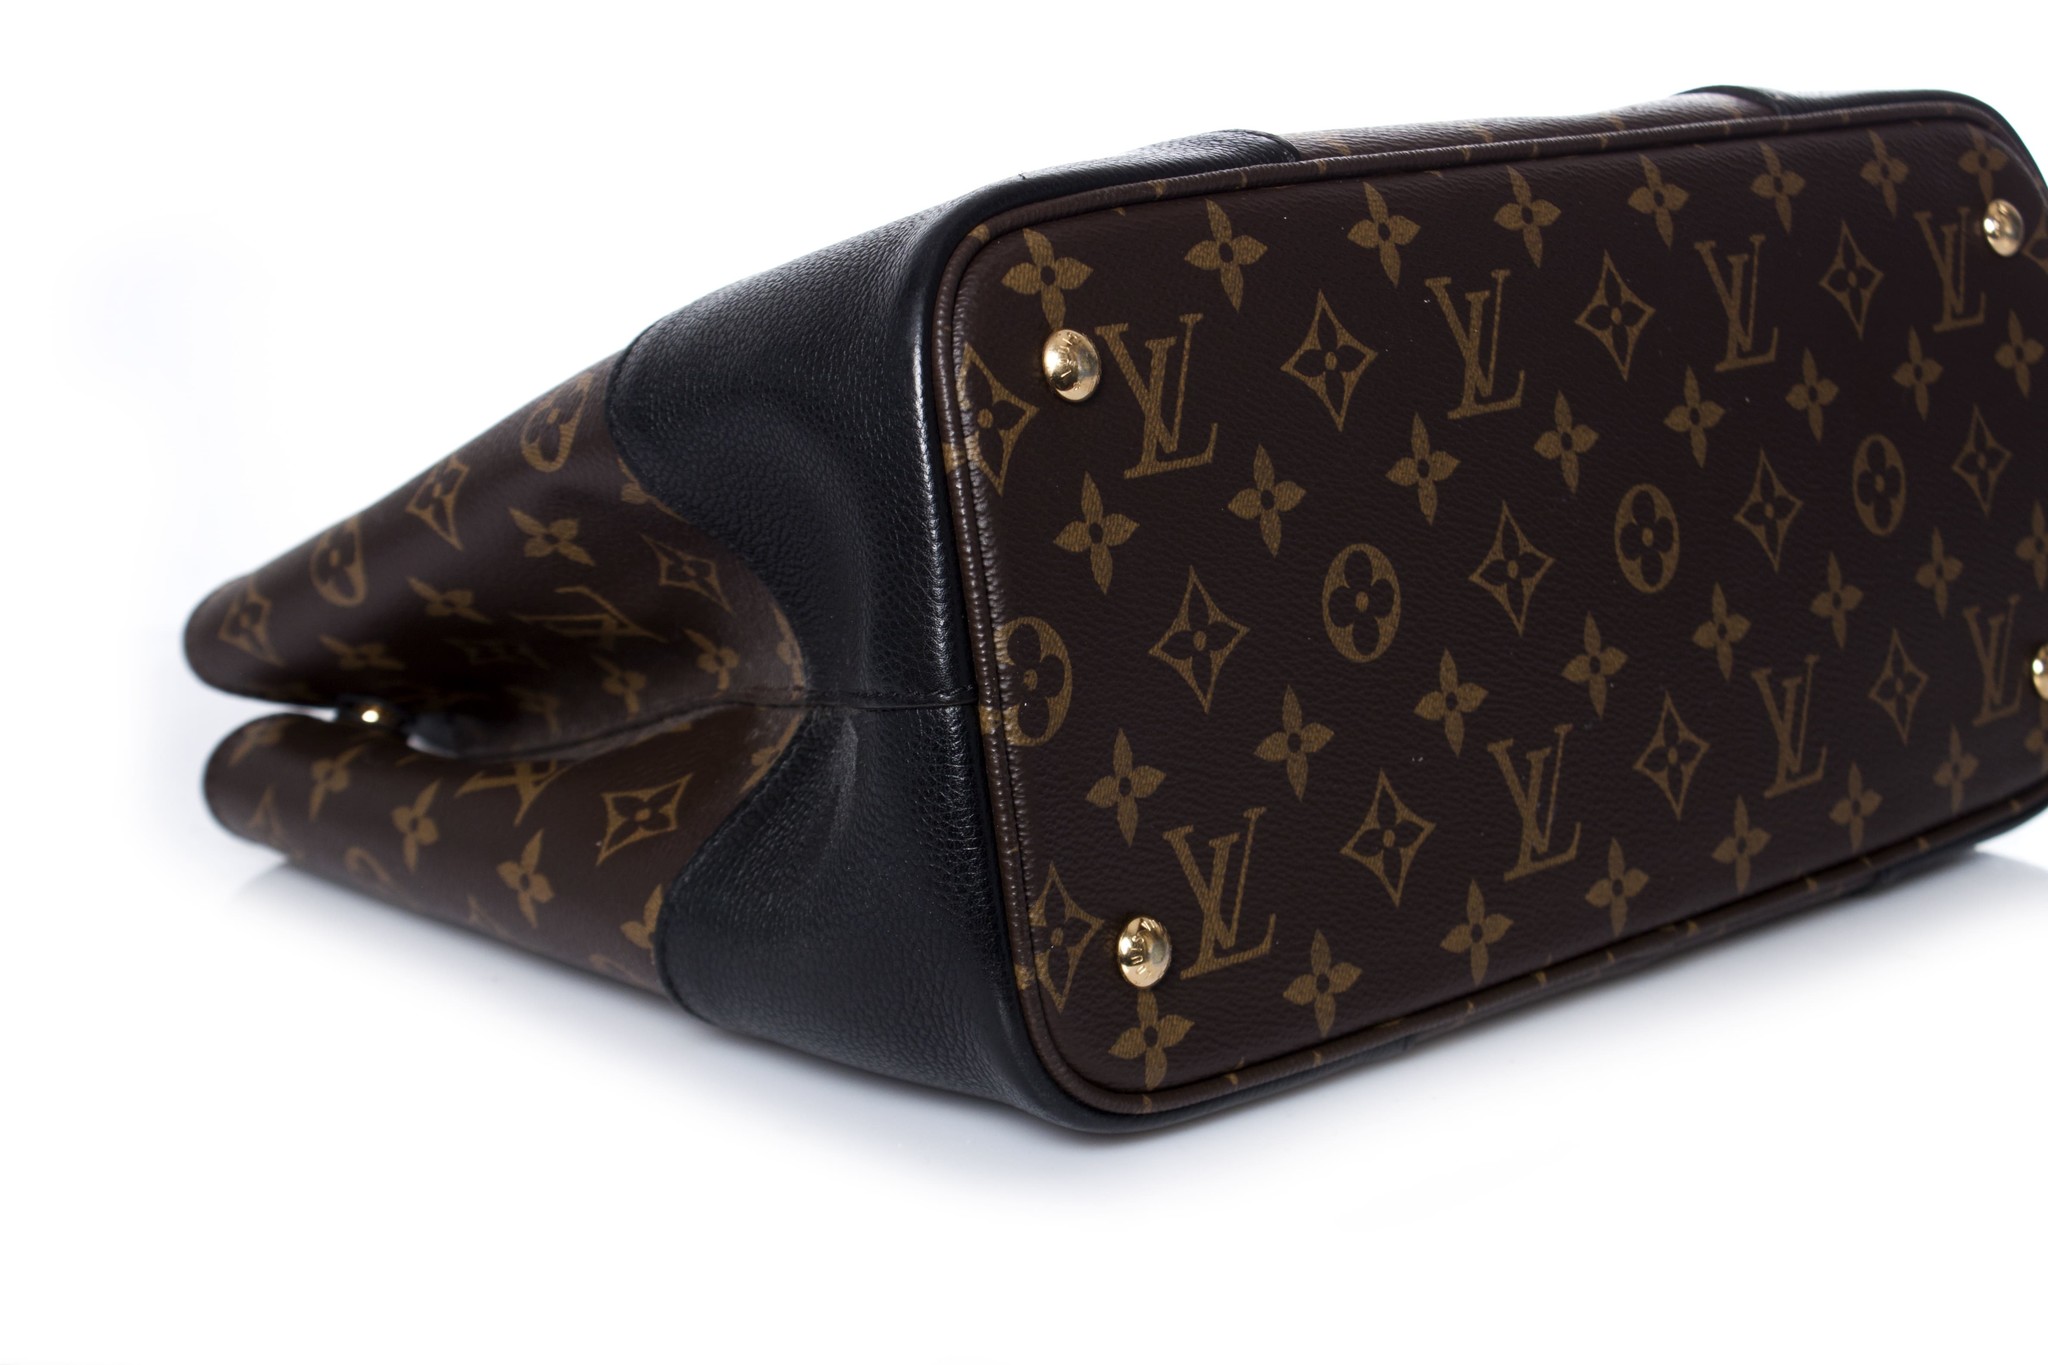 Louis Vuitton Monogram Noir Flandrin Bag - ShopperBoard